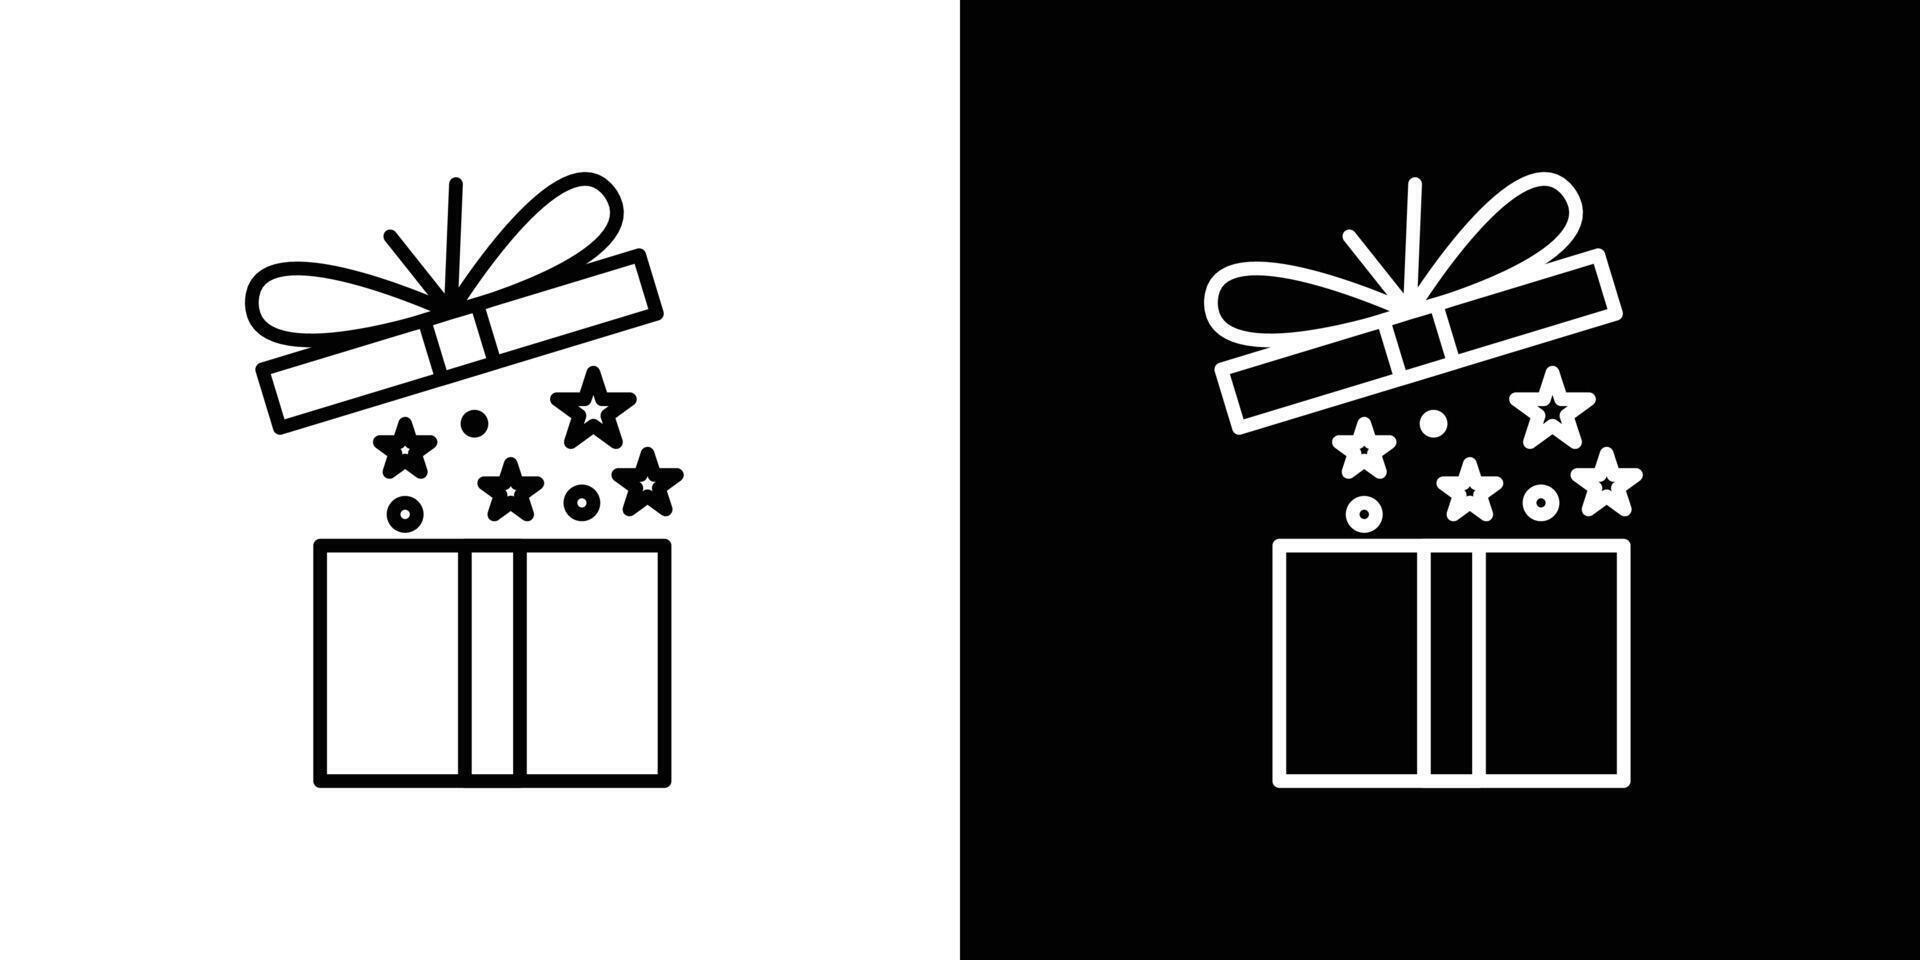 Open gift box icon vector